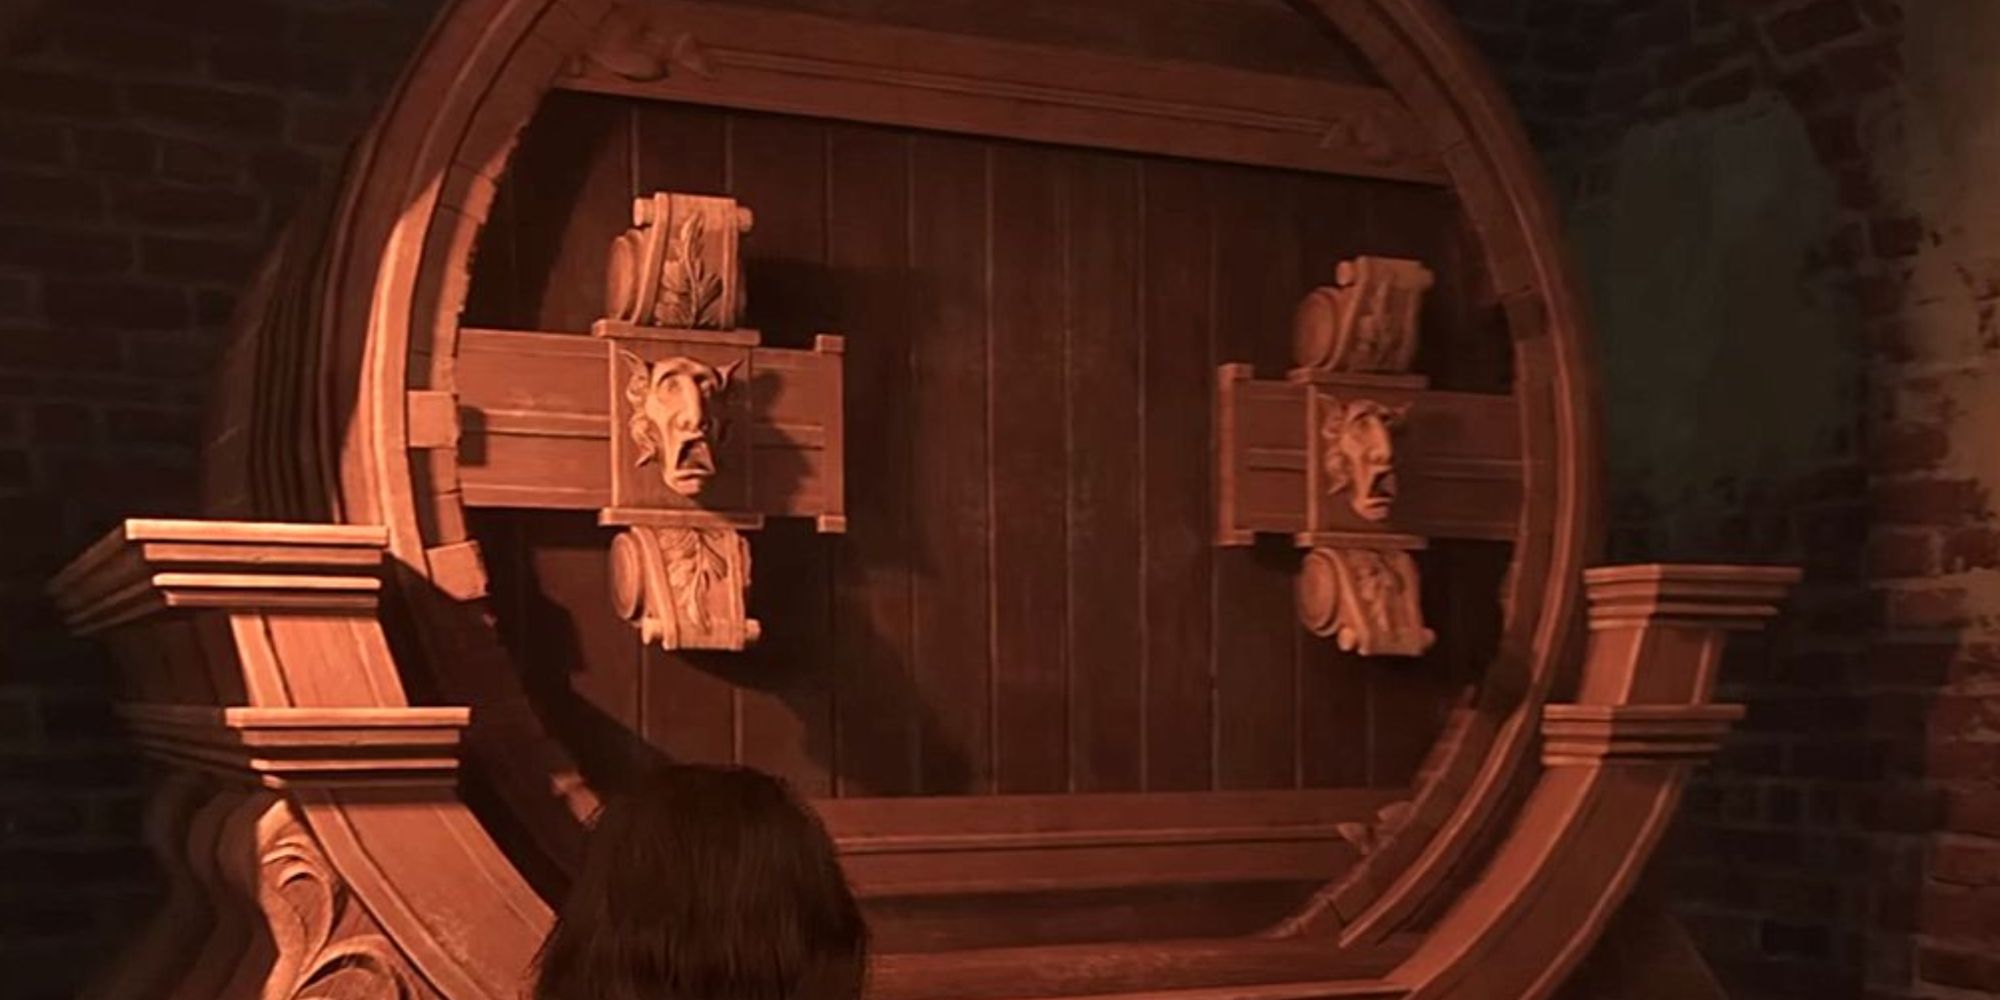 hufflepuff barrel entrance in hogwarts legacy